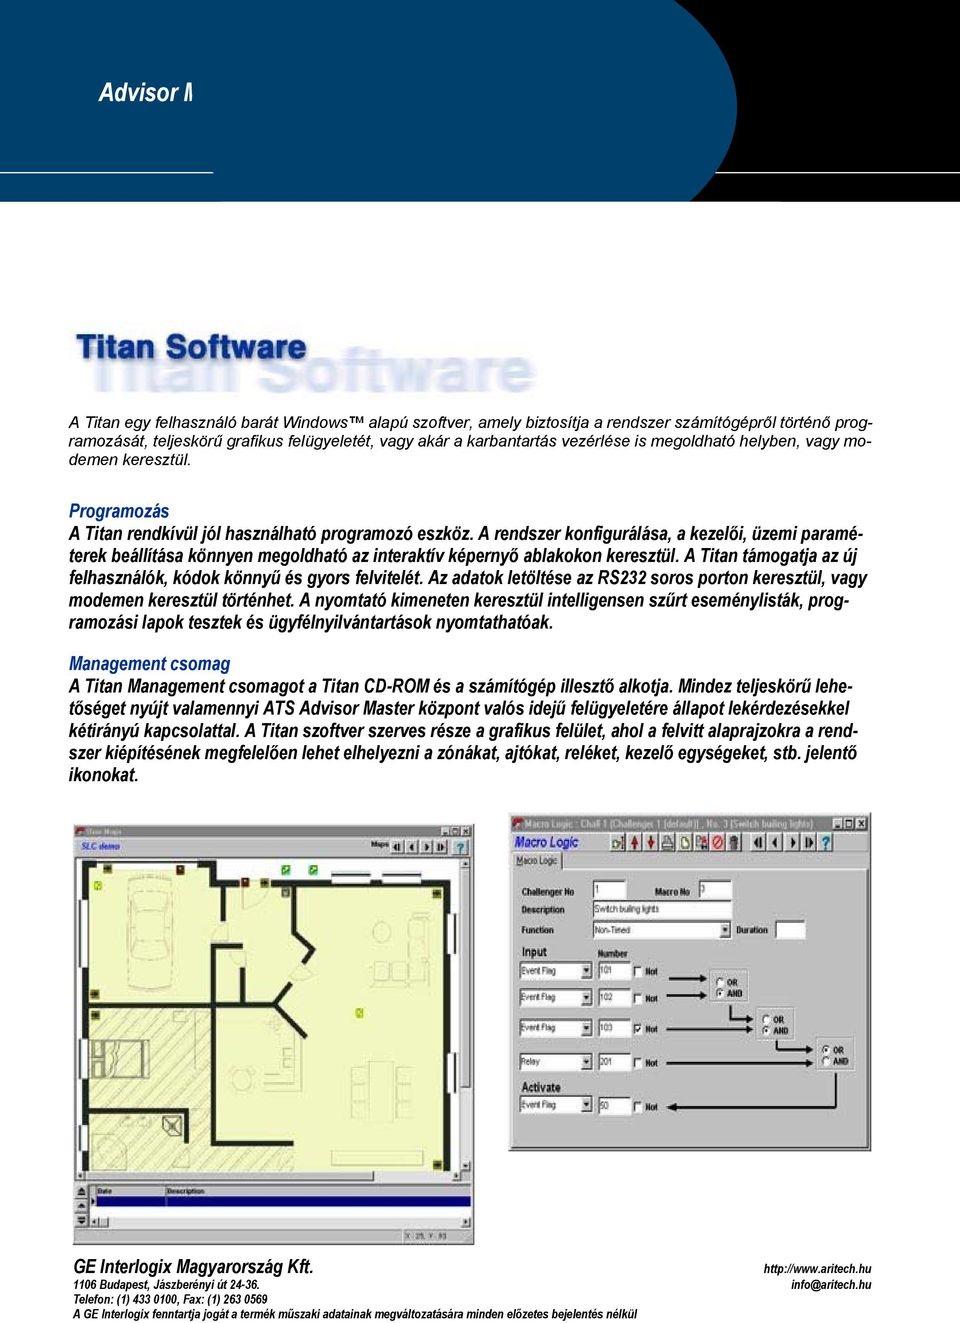 A rendszer konfigurálása, a kezelői, üzemi paraméterek beállítása könnyen megoldható az interaktív képernyő ablakokon keresztül. A Titan támogatja az új felhasználók, kódok könnyű és gyors felvitelét.